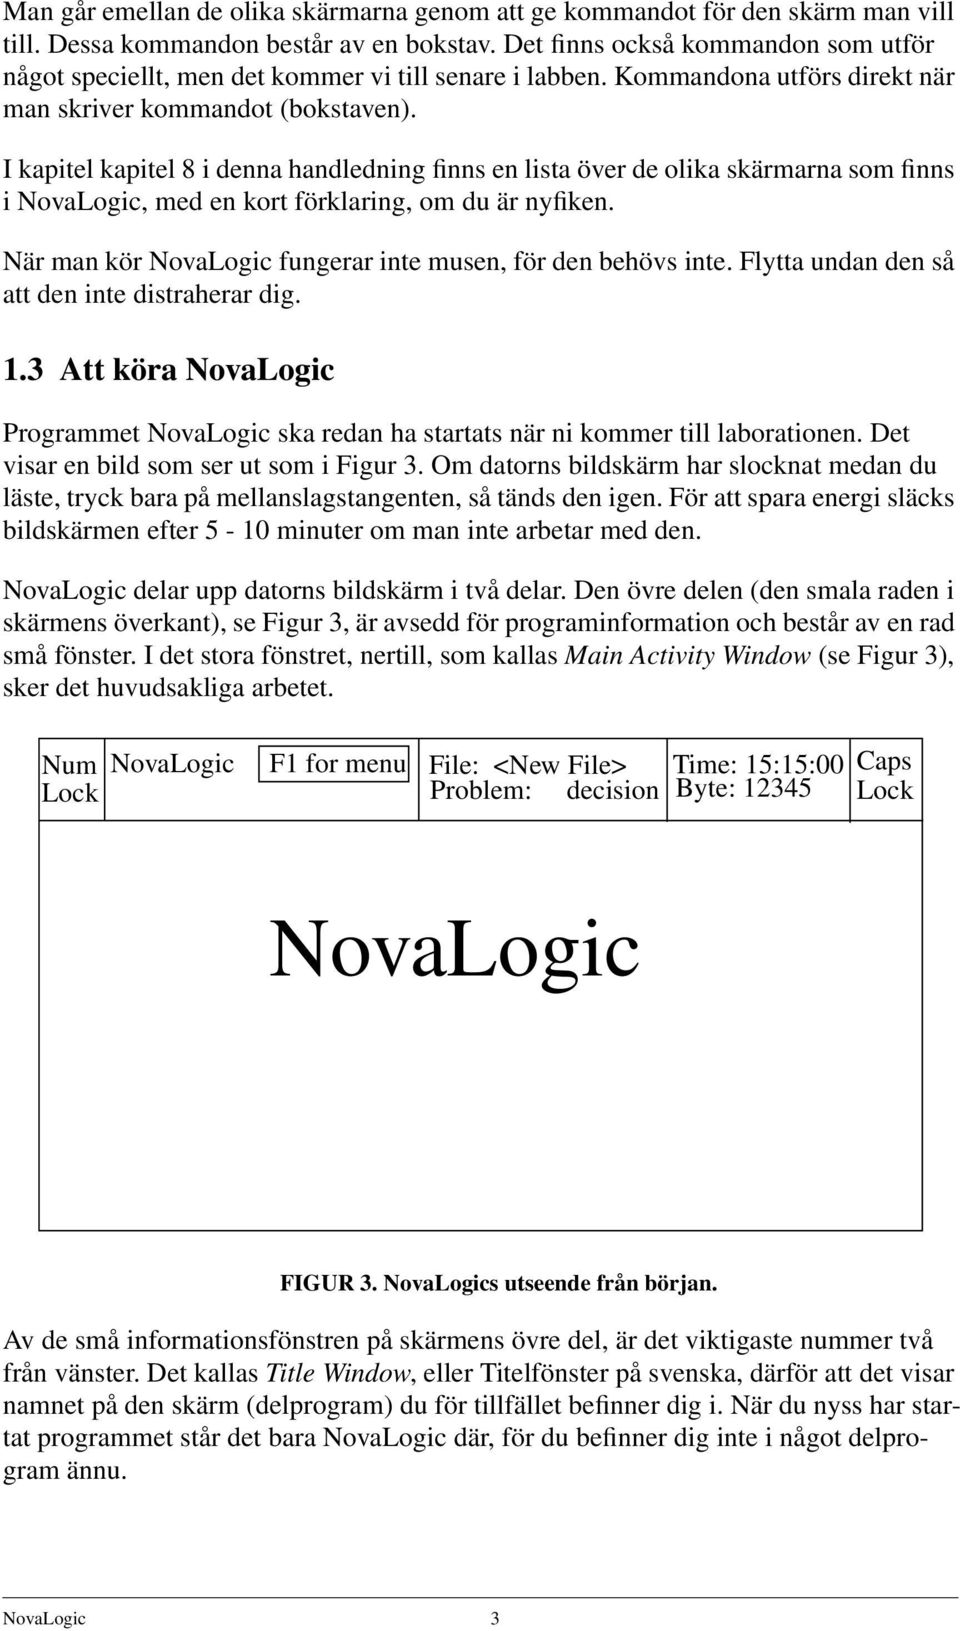 I kapitel kapitel 8 i denna handledning finns en lista över de olika skärmarna som finns i NovaLogic, med en kort förklaring, om du är nyfiken.